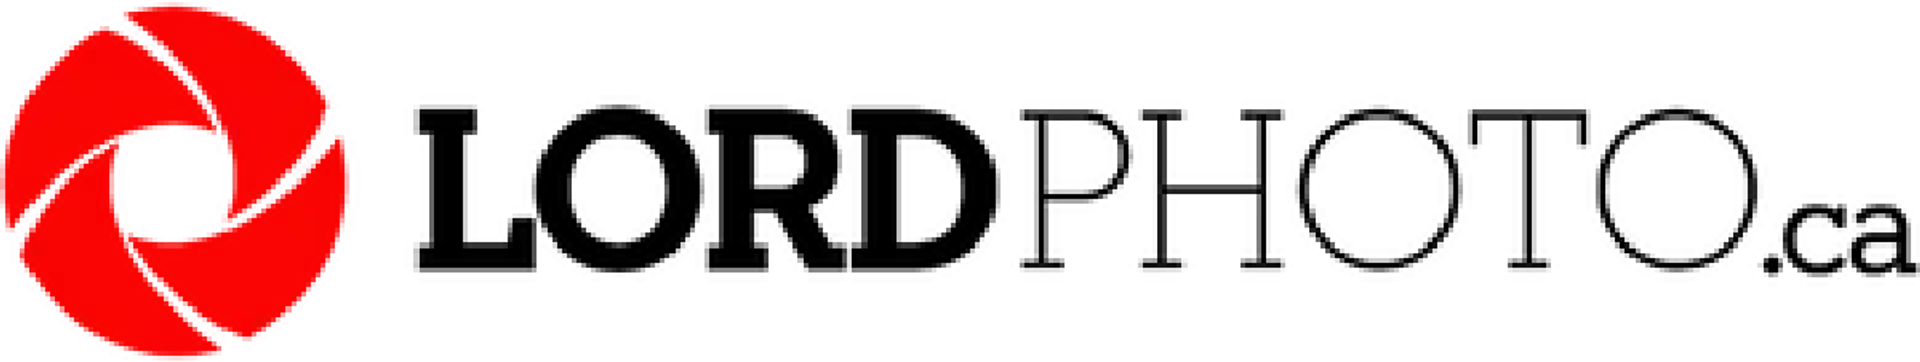 LORD PHOTO logo de circulaires